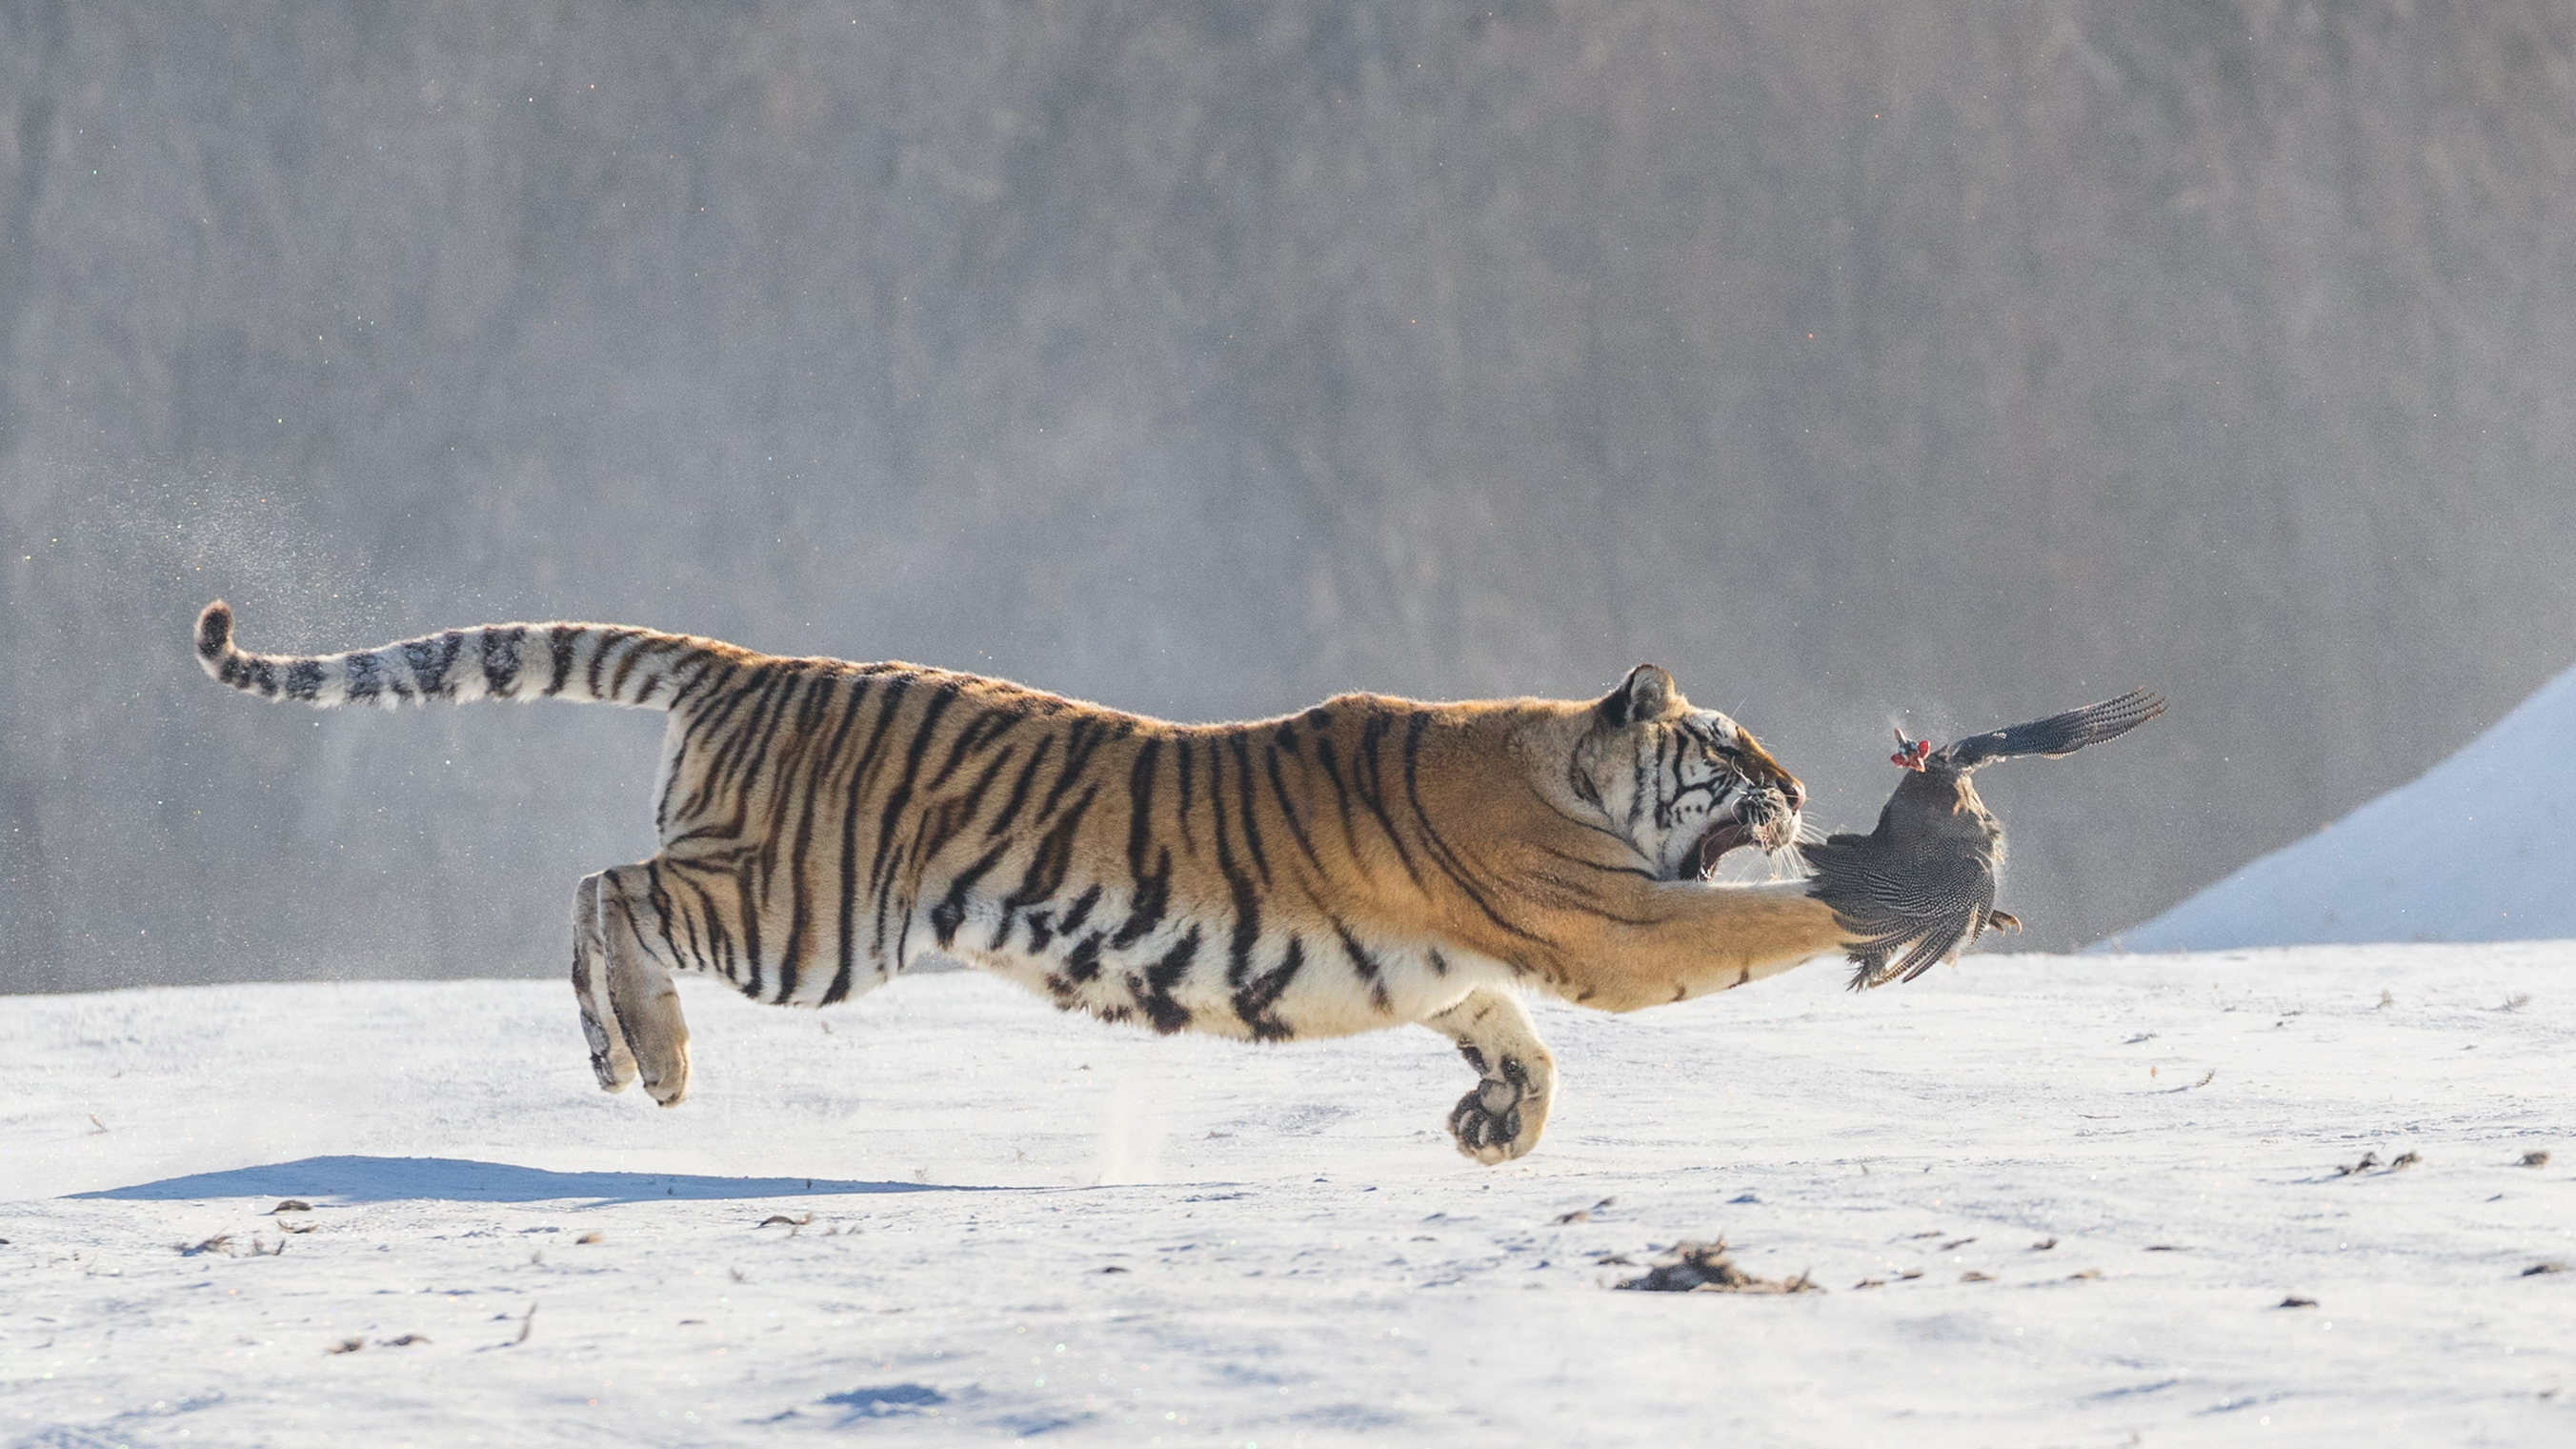 Tiger hunting in flight